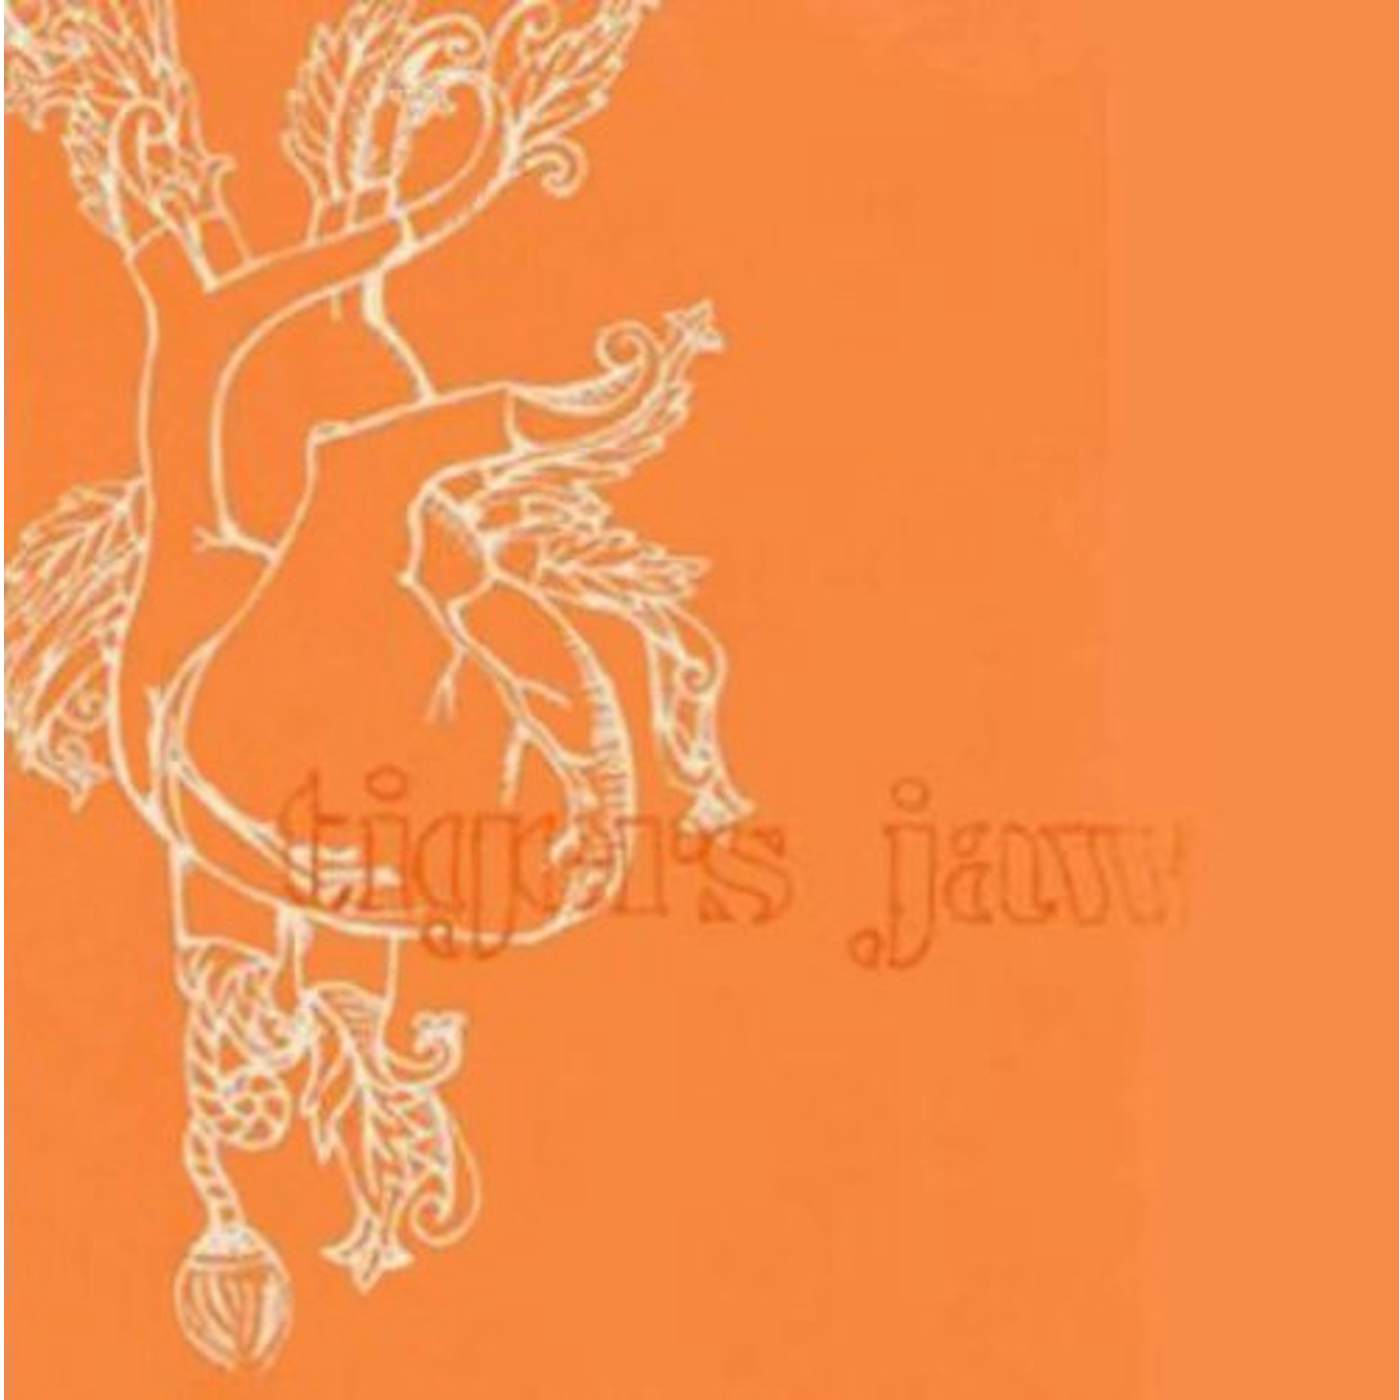 Tigers Jaw Vinyl Record